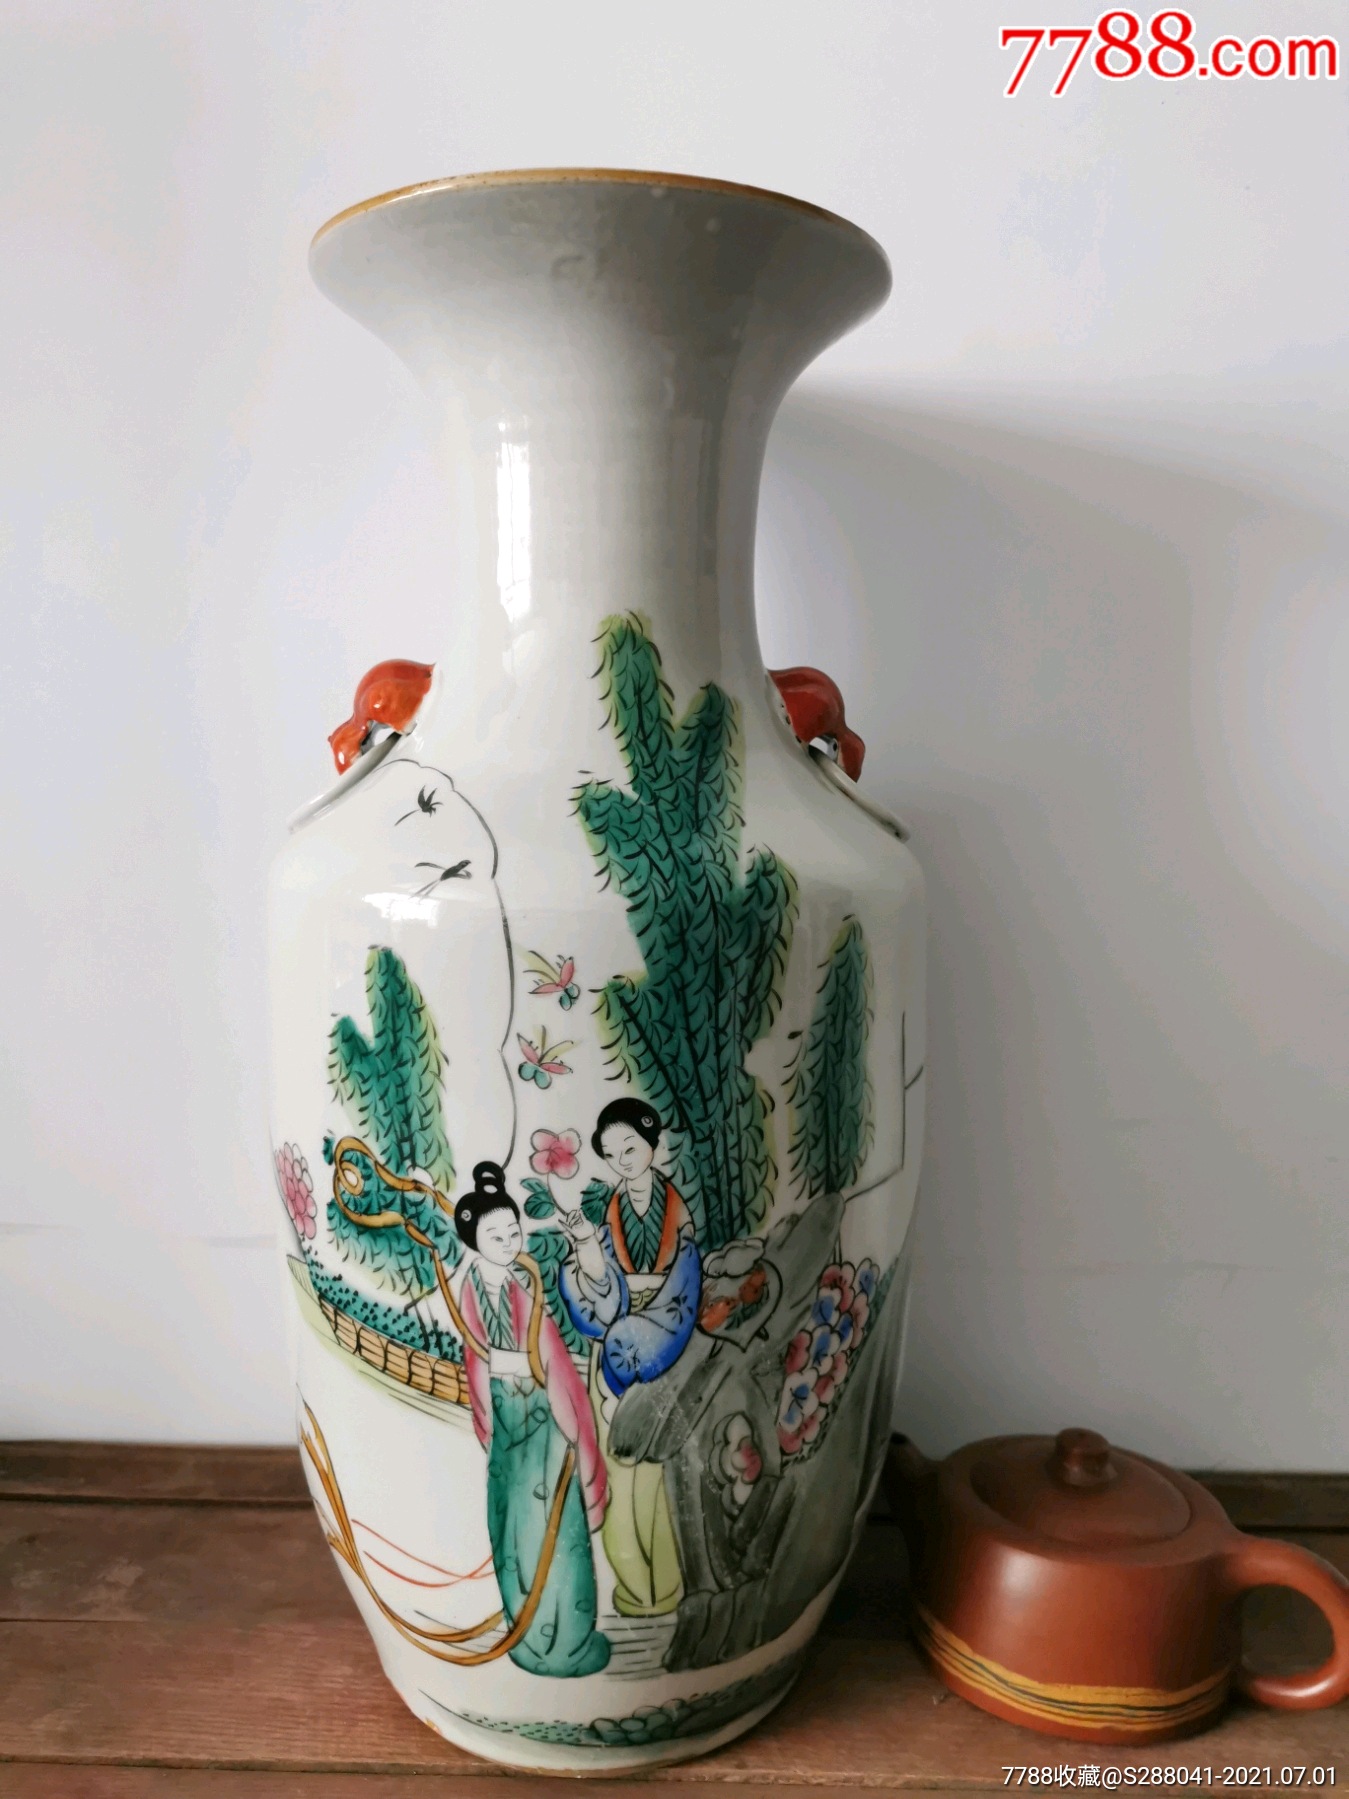 名家毛子荣手绘老瓷器150件大花瓶老物件收藏品古玩古董乡下一线民间